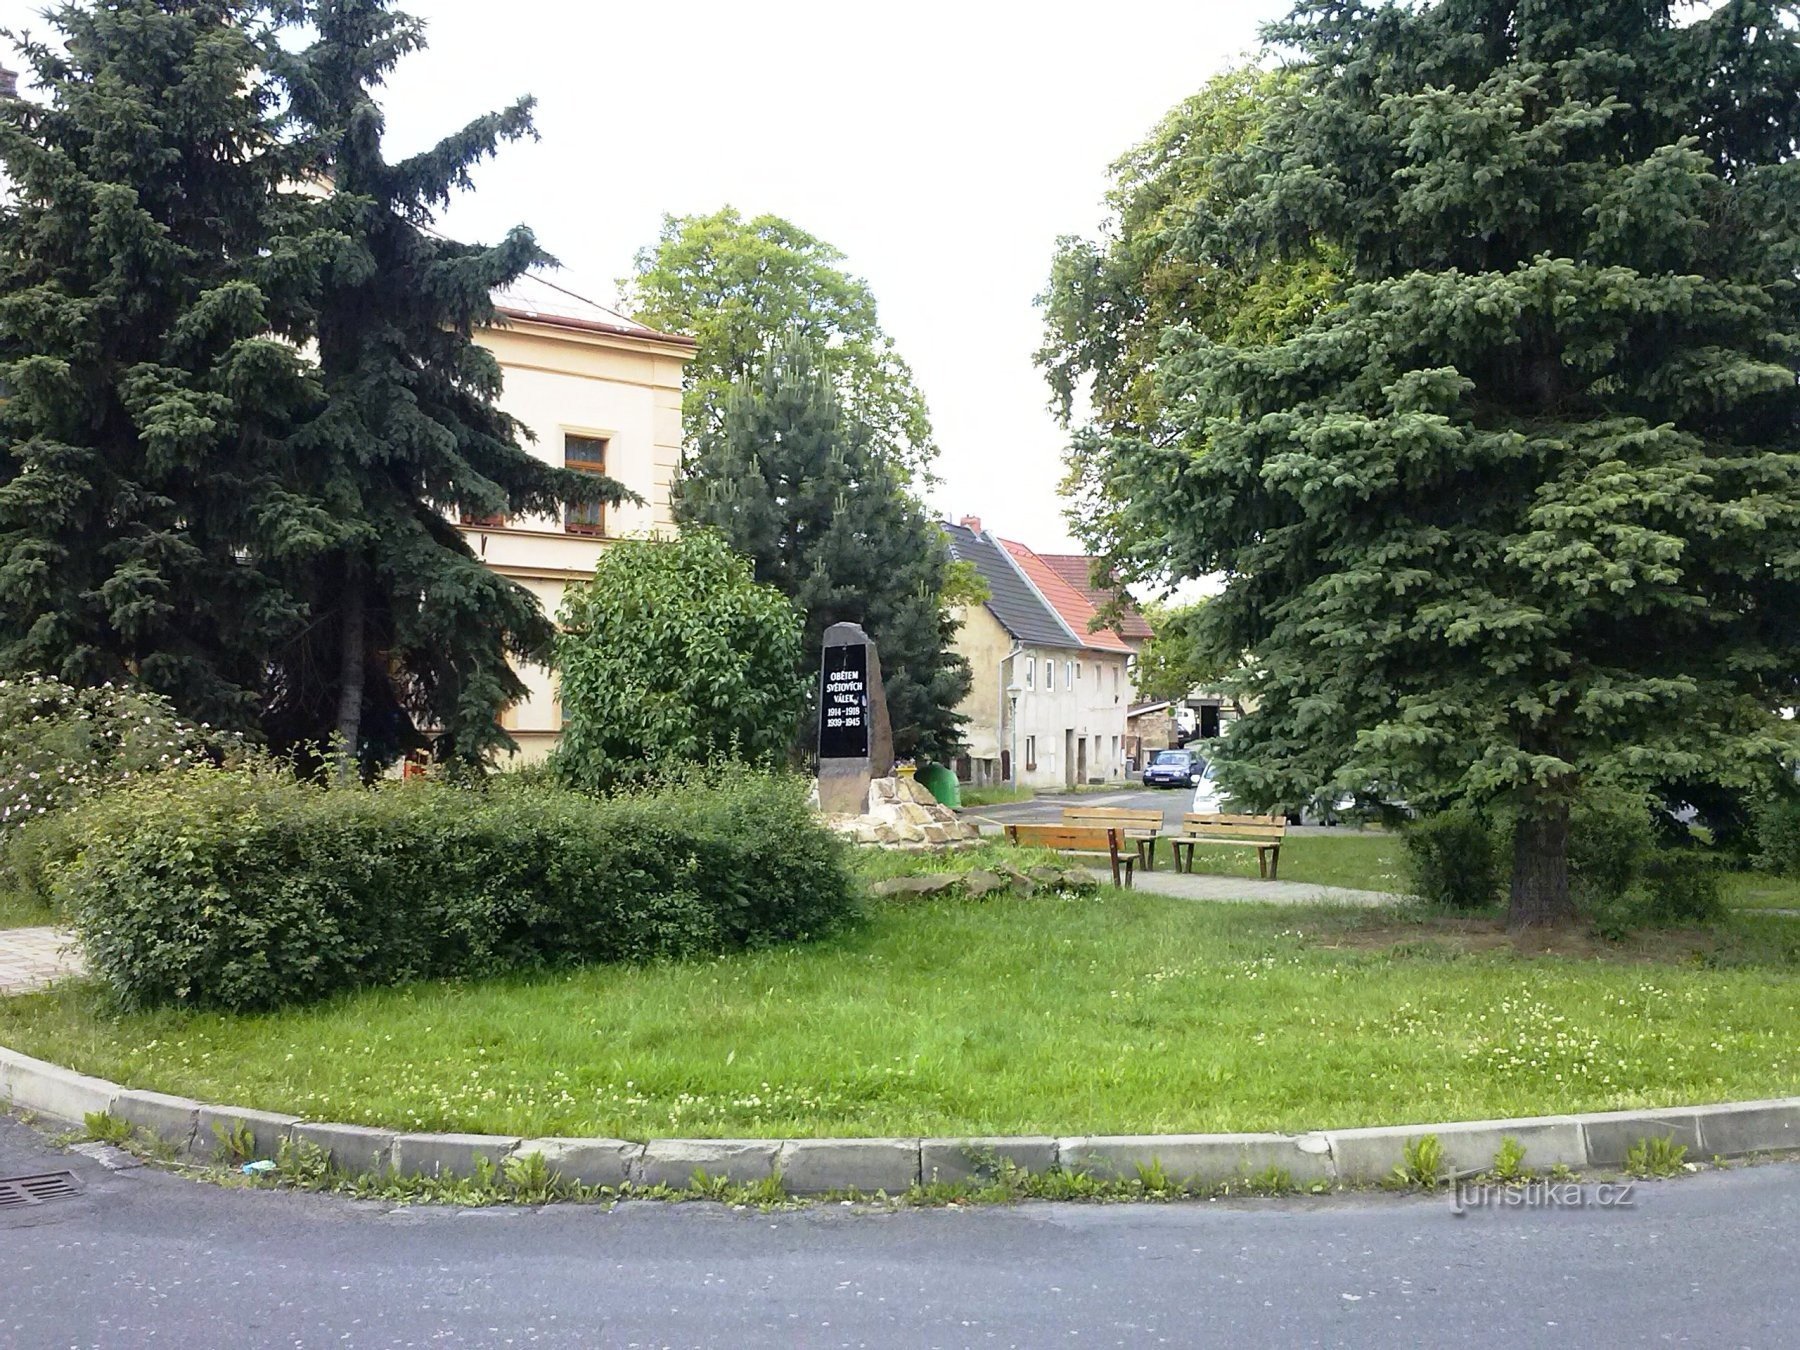 2. Un semirremolque en Újezdeček con un monumento